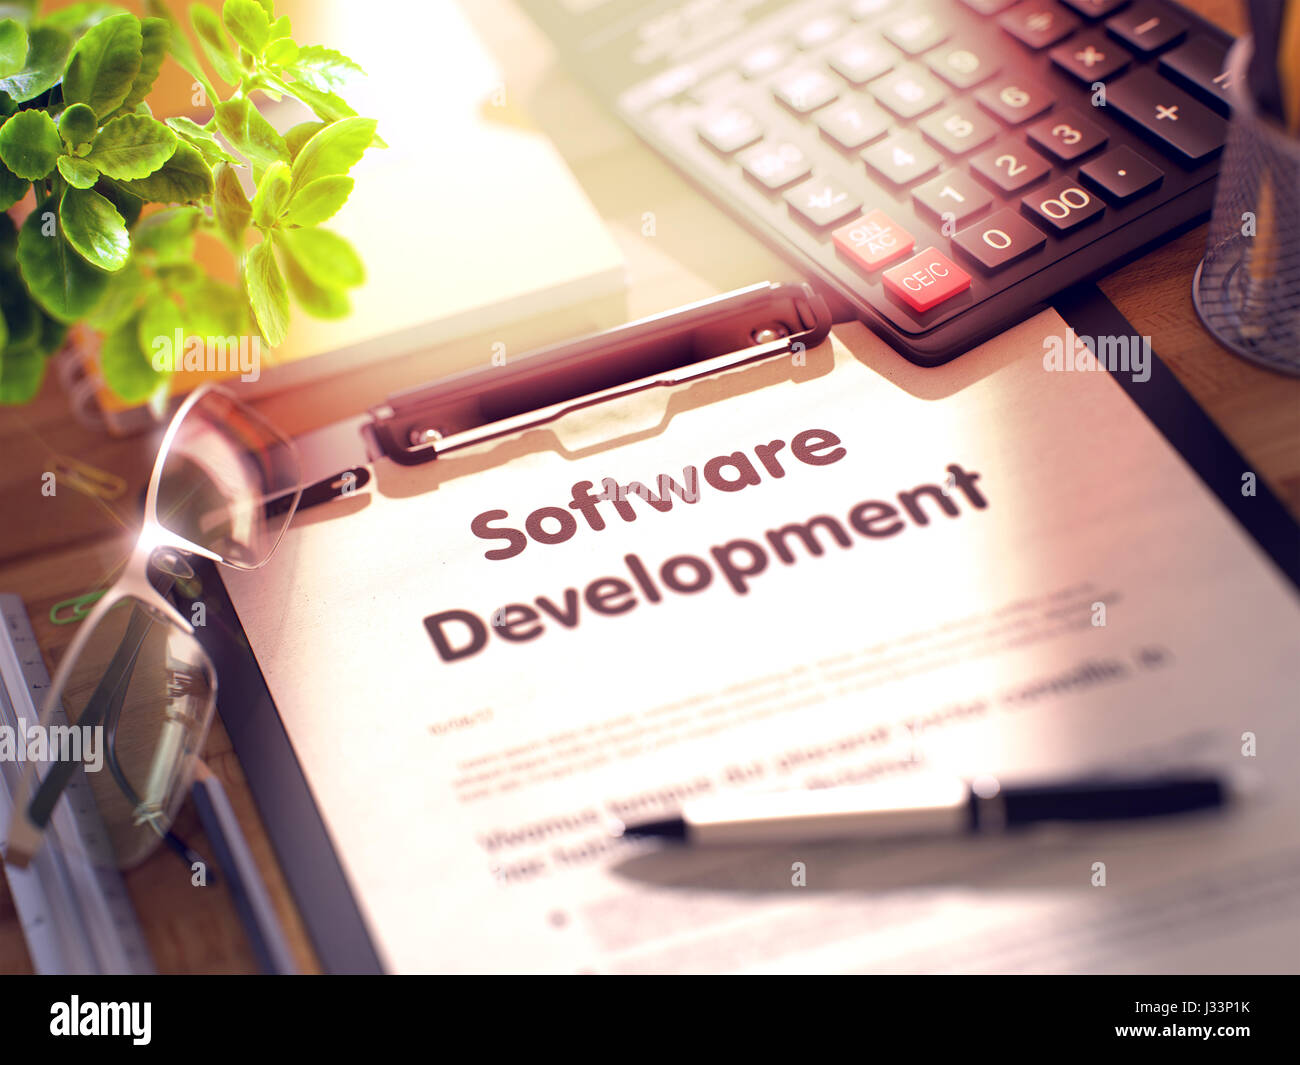 Sviluppo Software - testo negli Appunti. 3d. Foto Stock